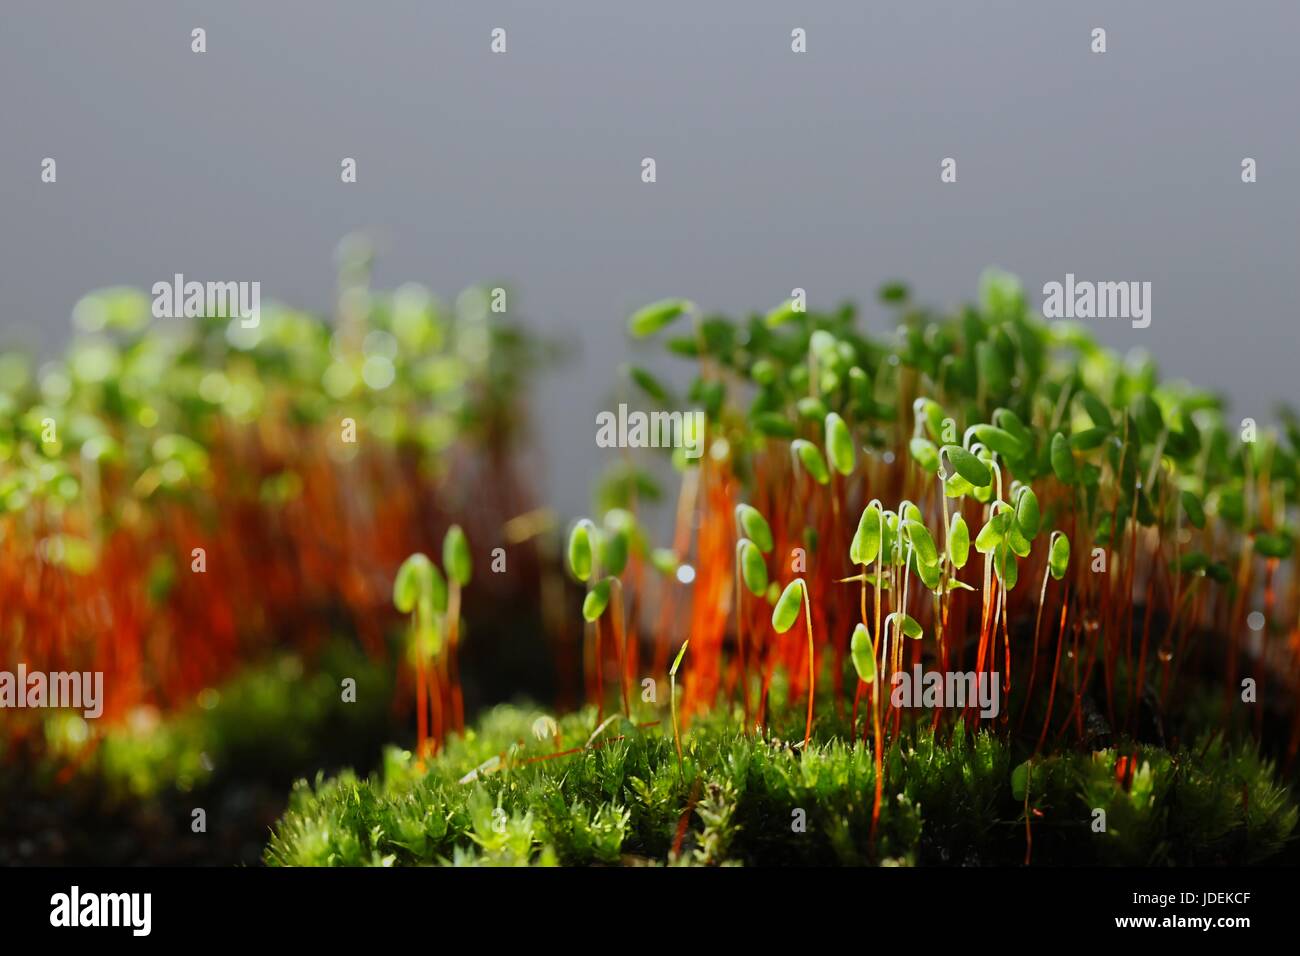 Spore capsules of a green moss, Pohlia nutans Stock Photo